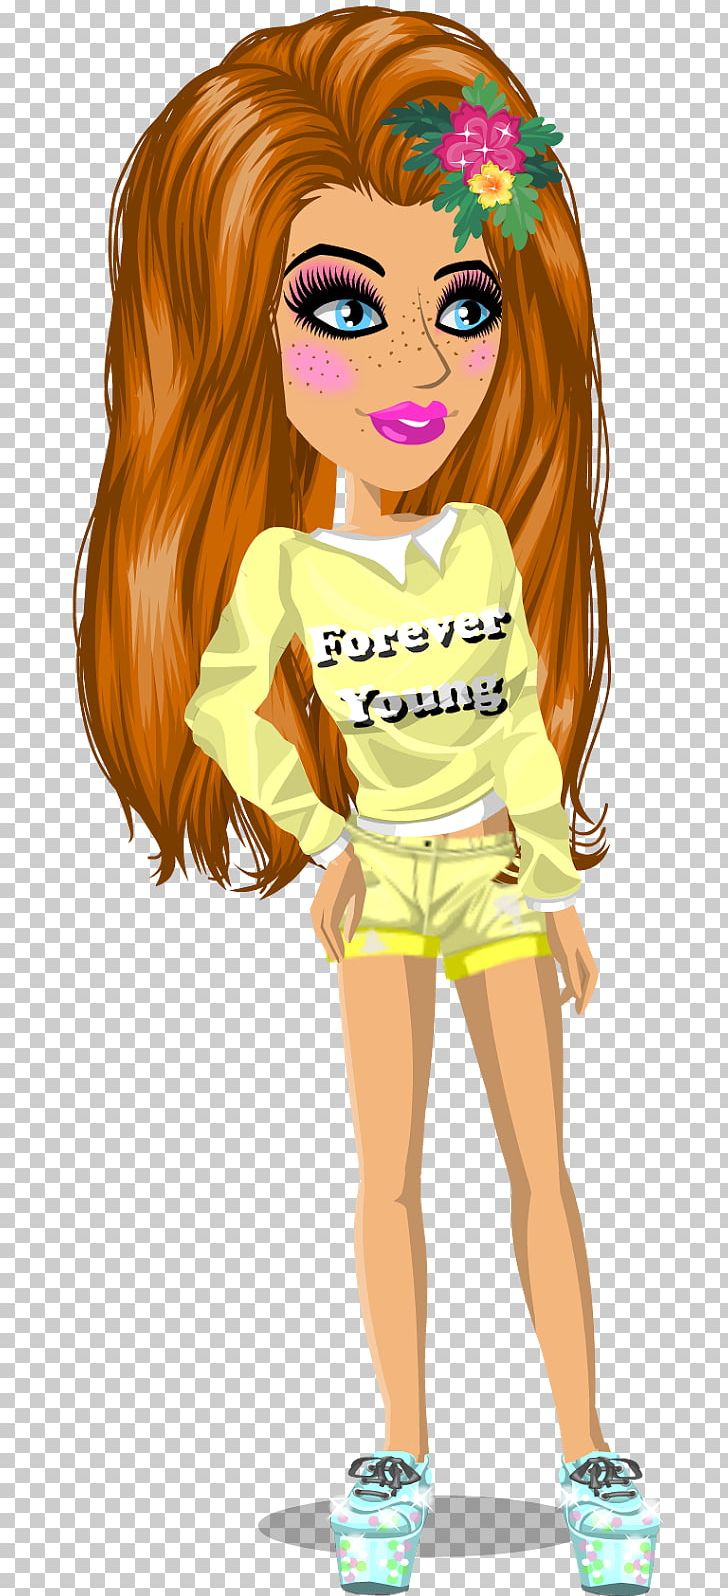 Barbie Brown Hair Cartoon PNG, Clipart, Art, Barbie, Brown, Brown Hair, Cartoon Free PNG Download